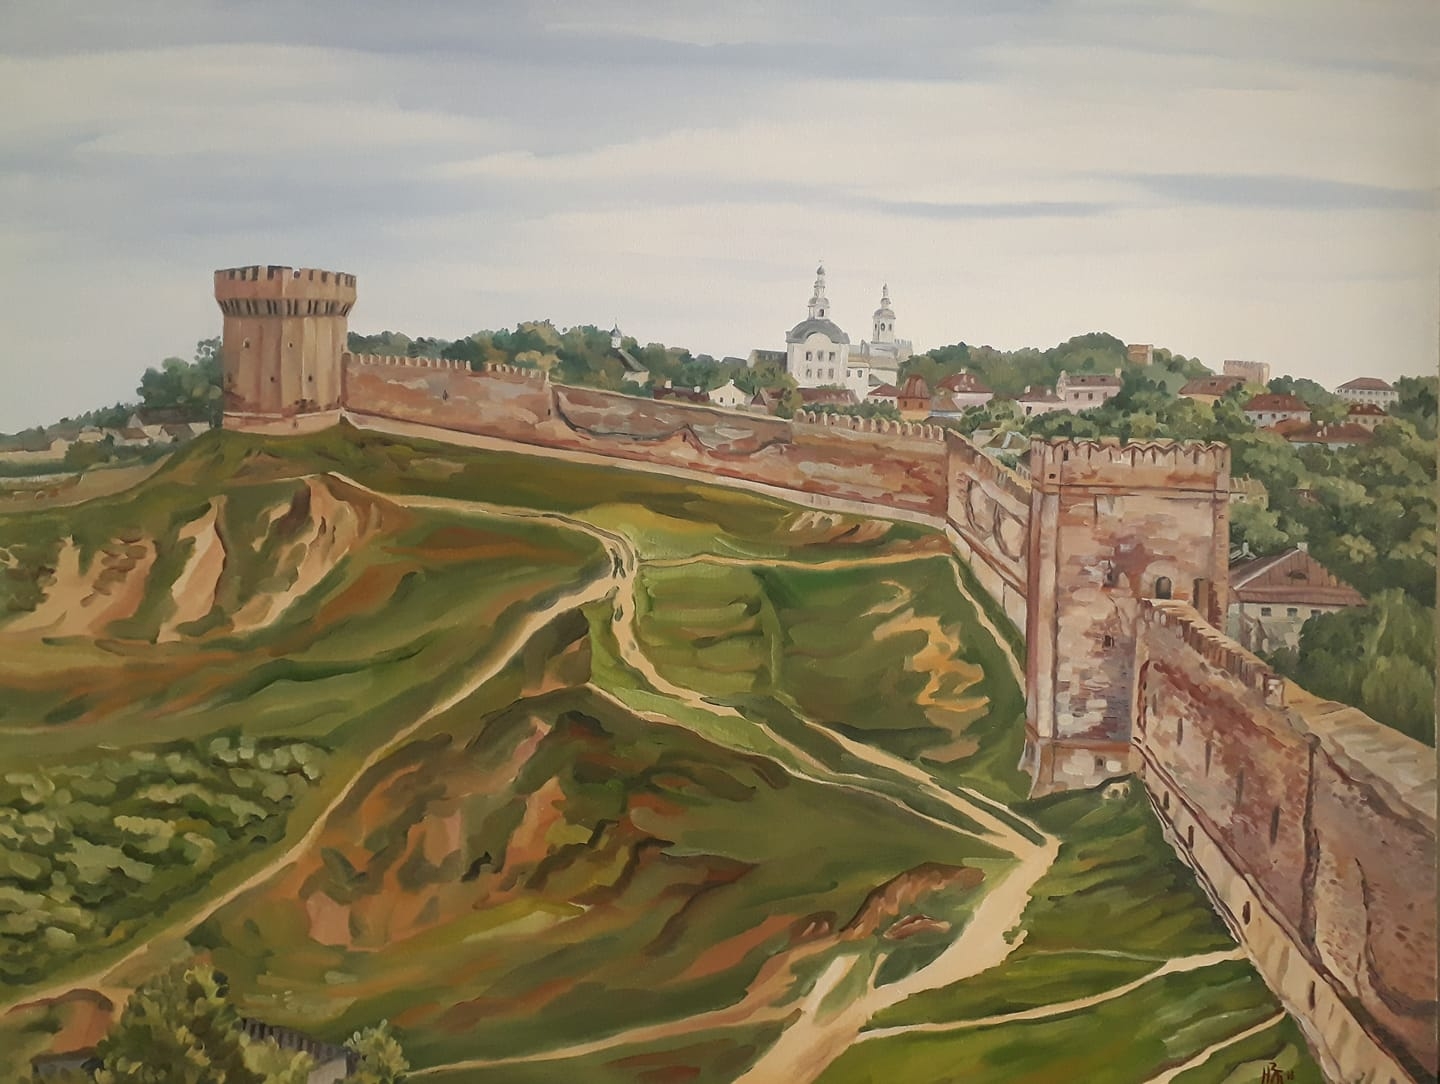 Изображенная на картине крепость была выстроена. Смоленская крепость Смоленск. Город Смоленск Смоленская Крепостная стена. Смоленская крепость 16 век. Крепостная стена Смоленск.